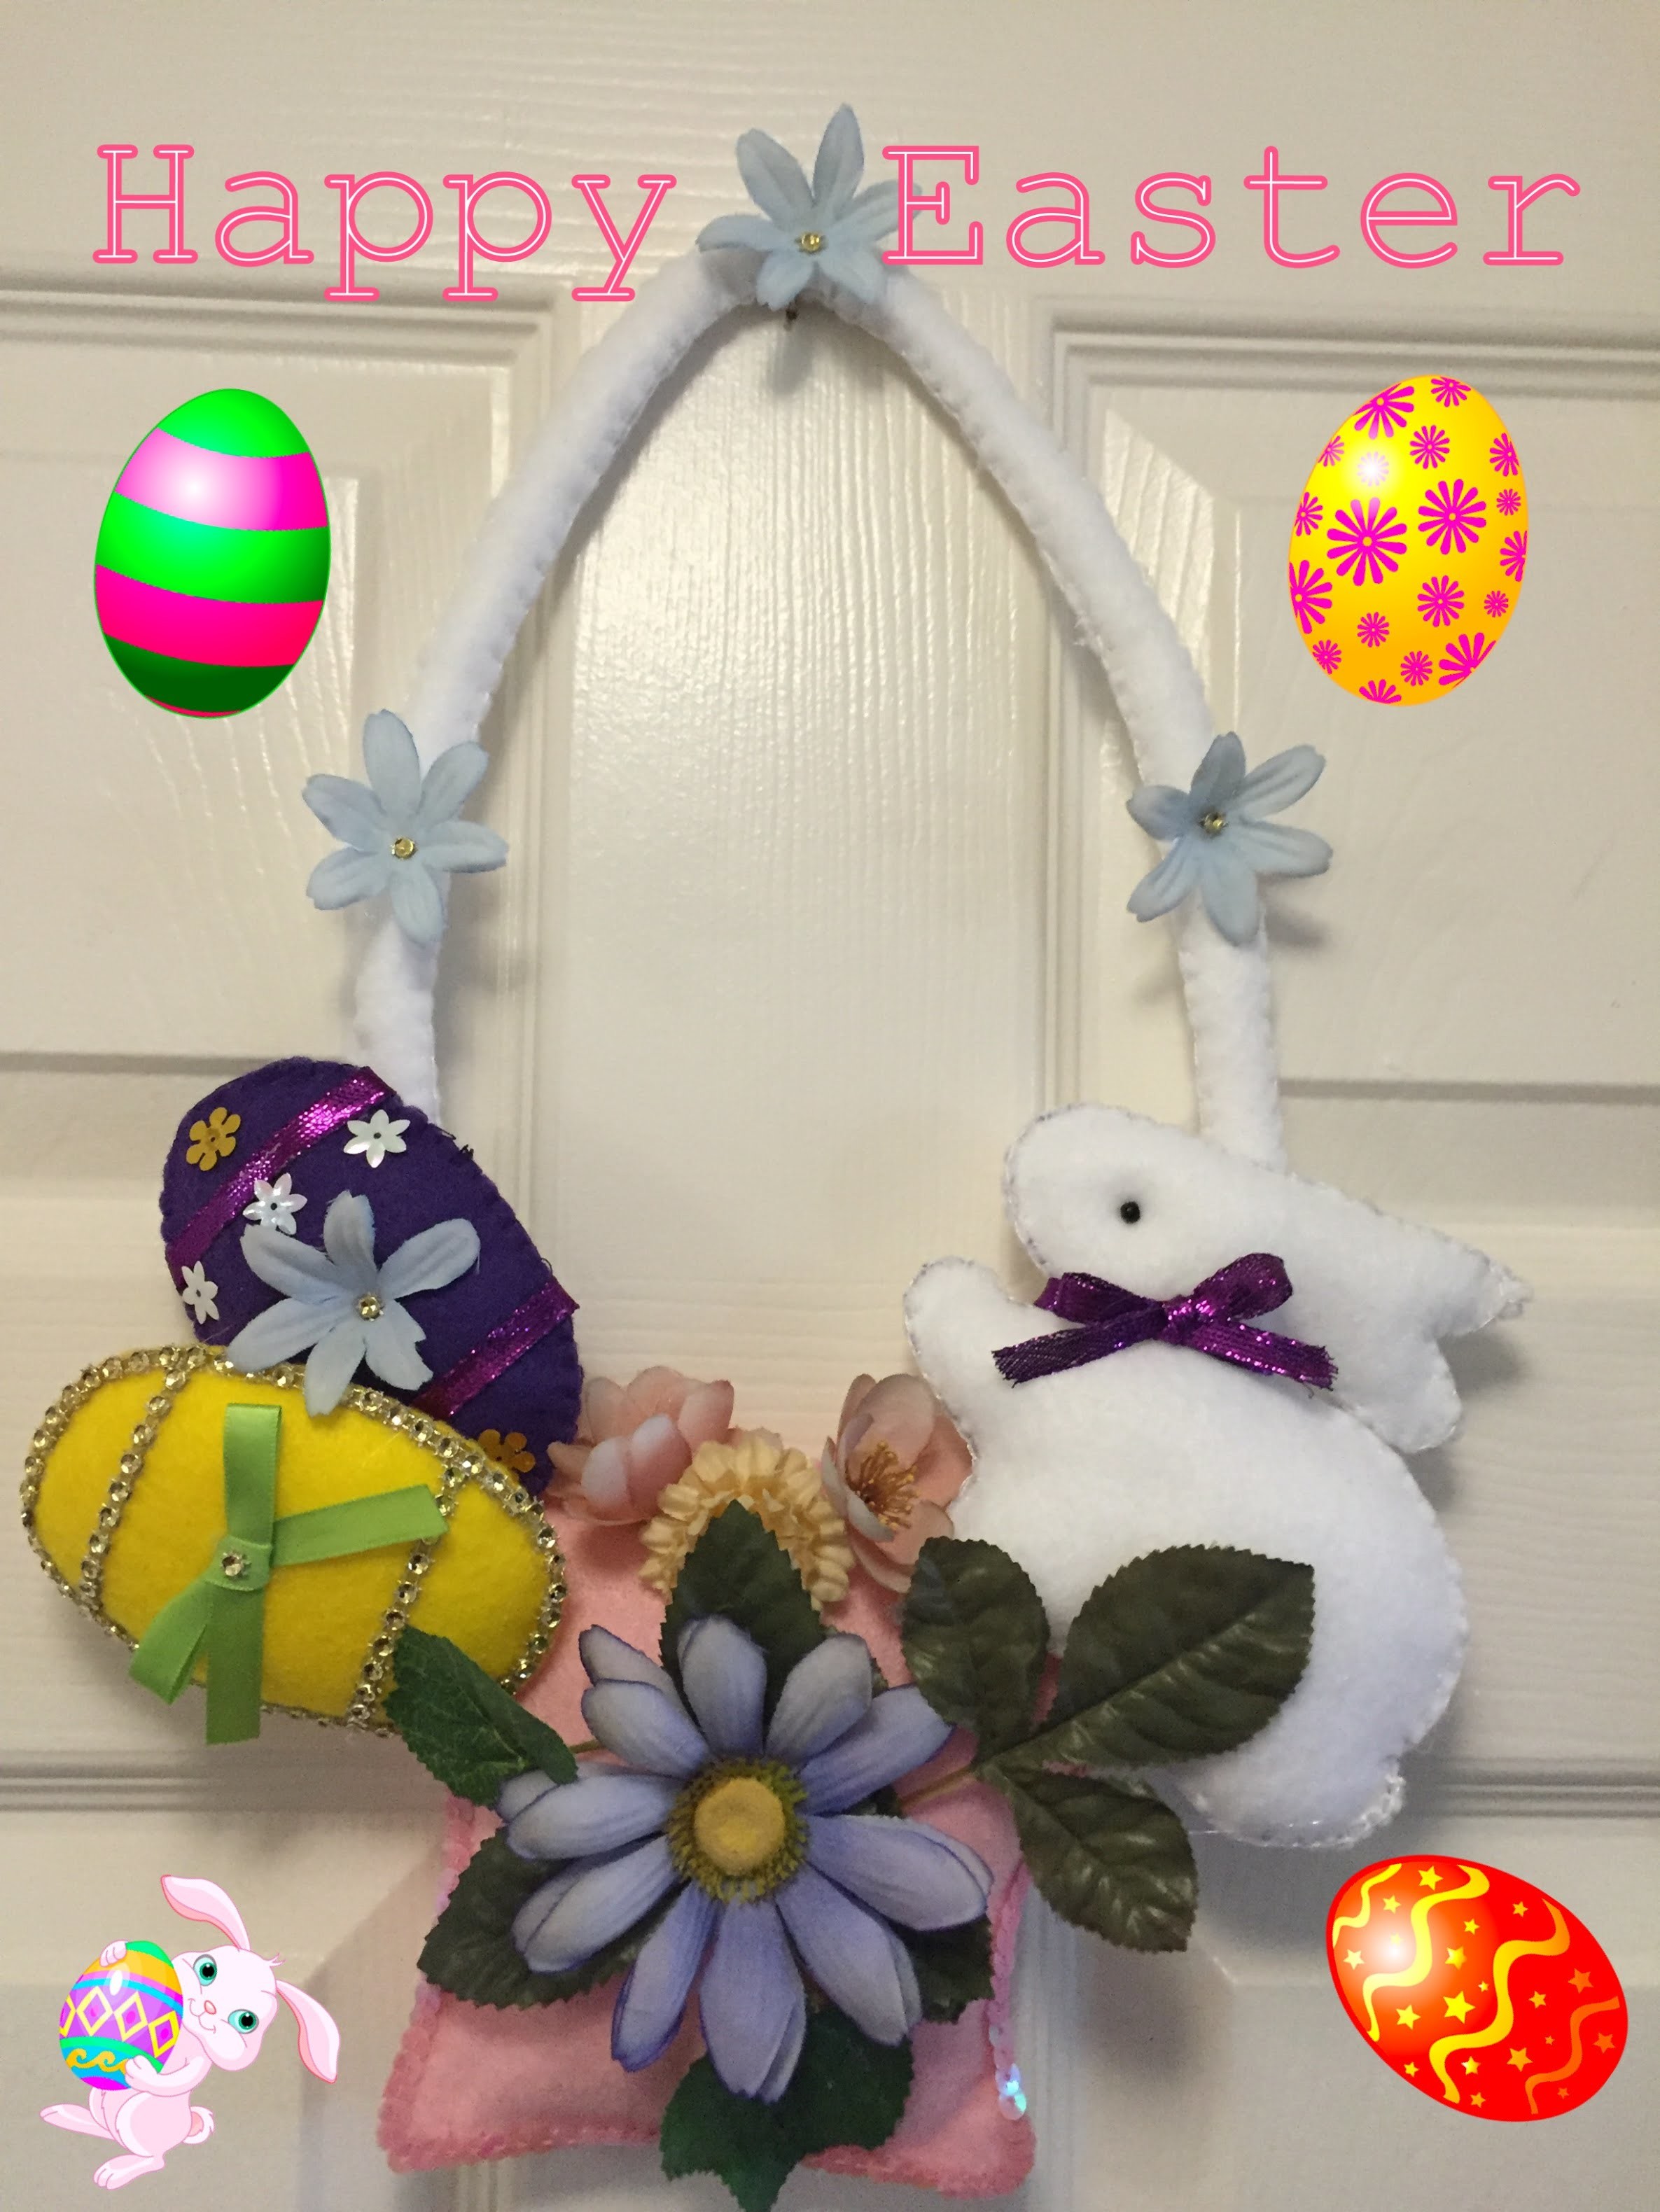 Diy:Manualidades de Pascua para la puerta (Happy Easter decoration)